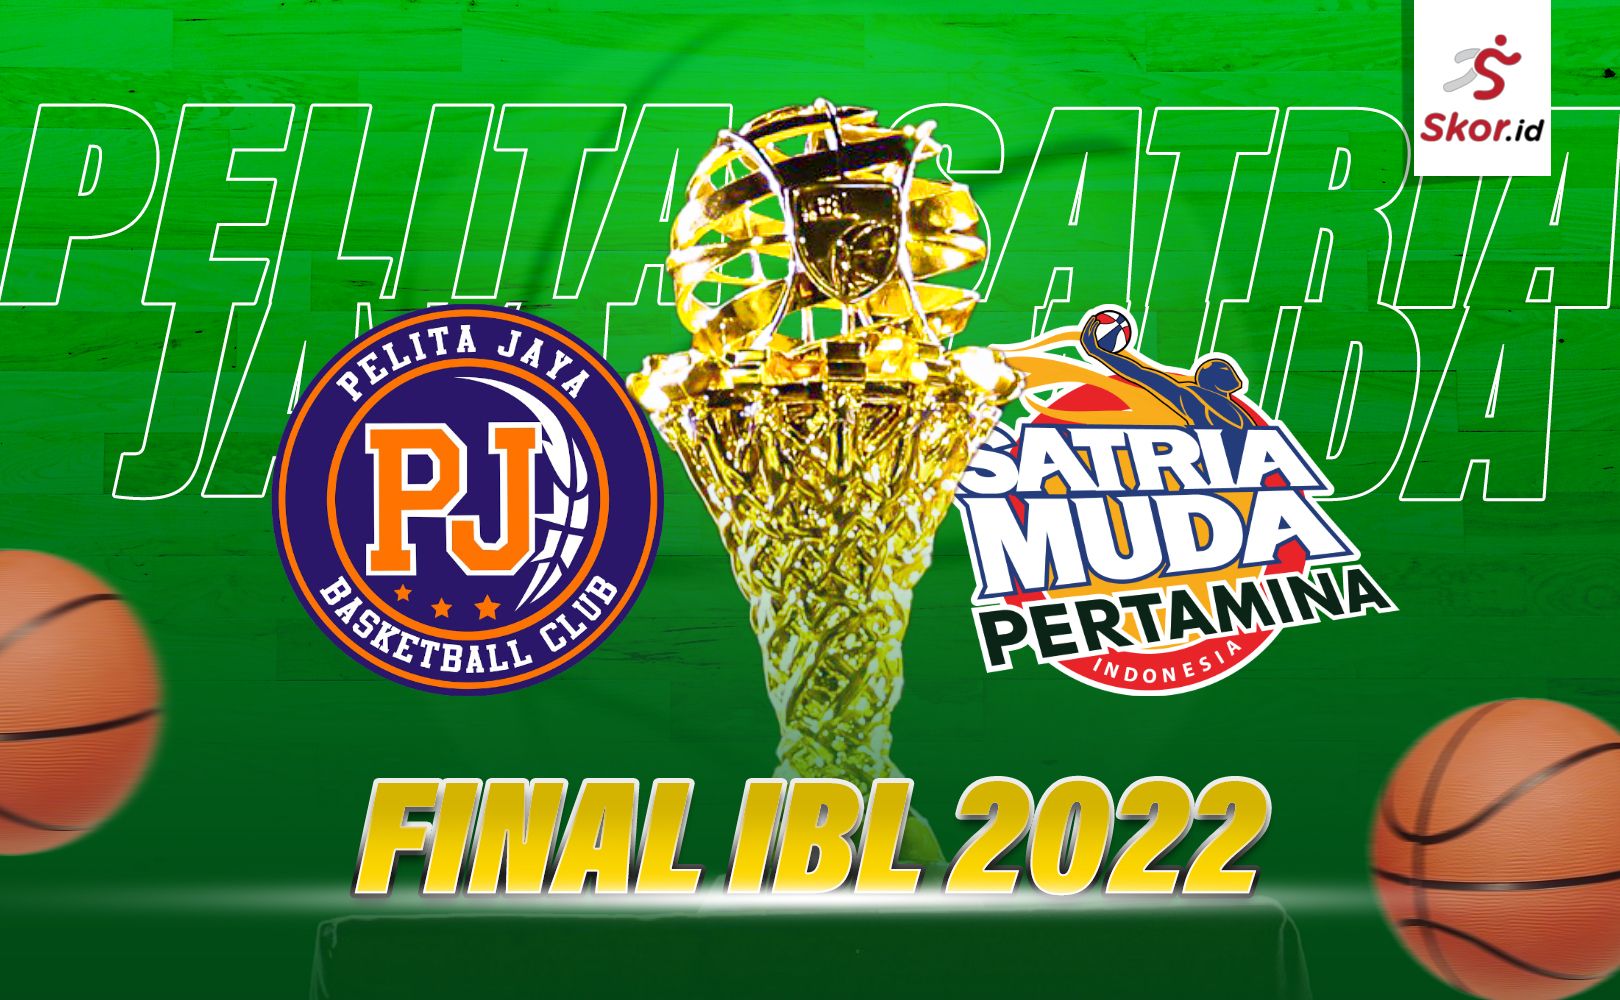 Cover Final IBL 2022, Pelita Jaya vs Satria Muda